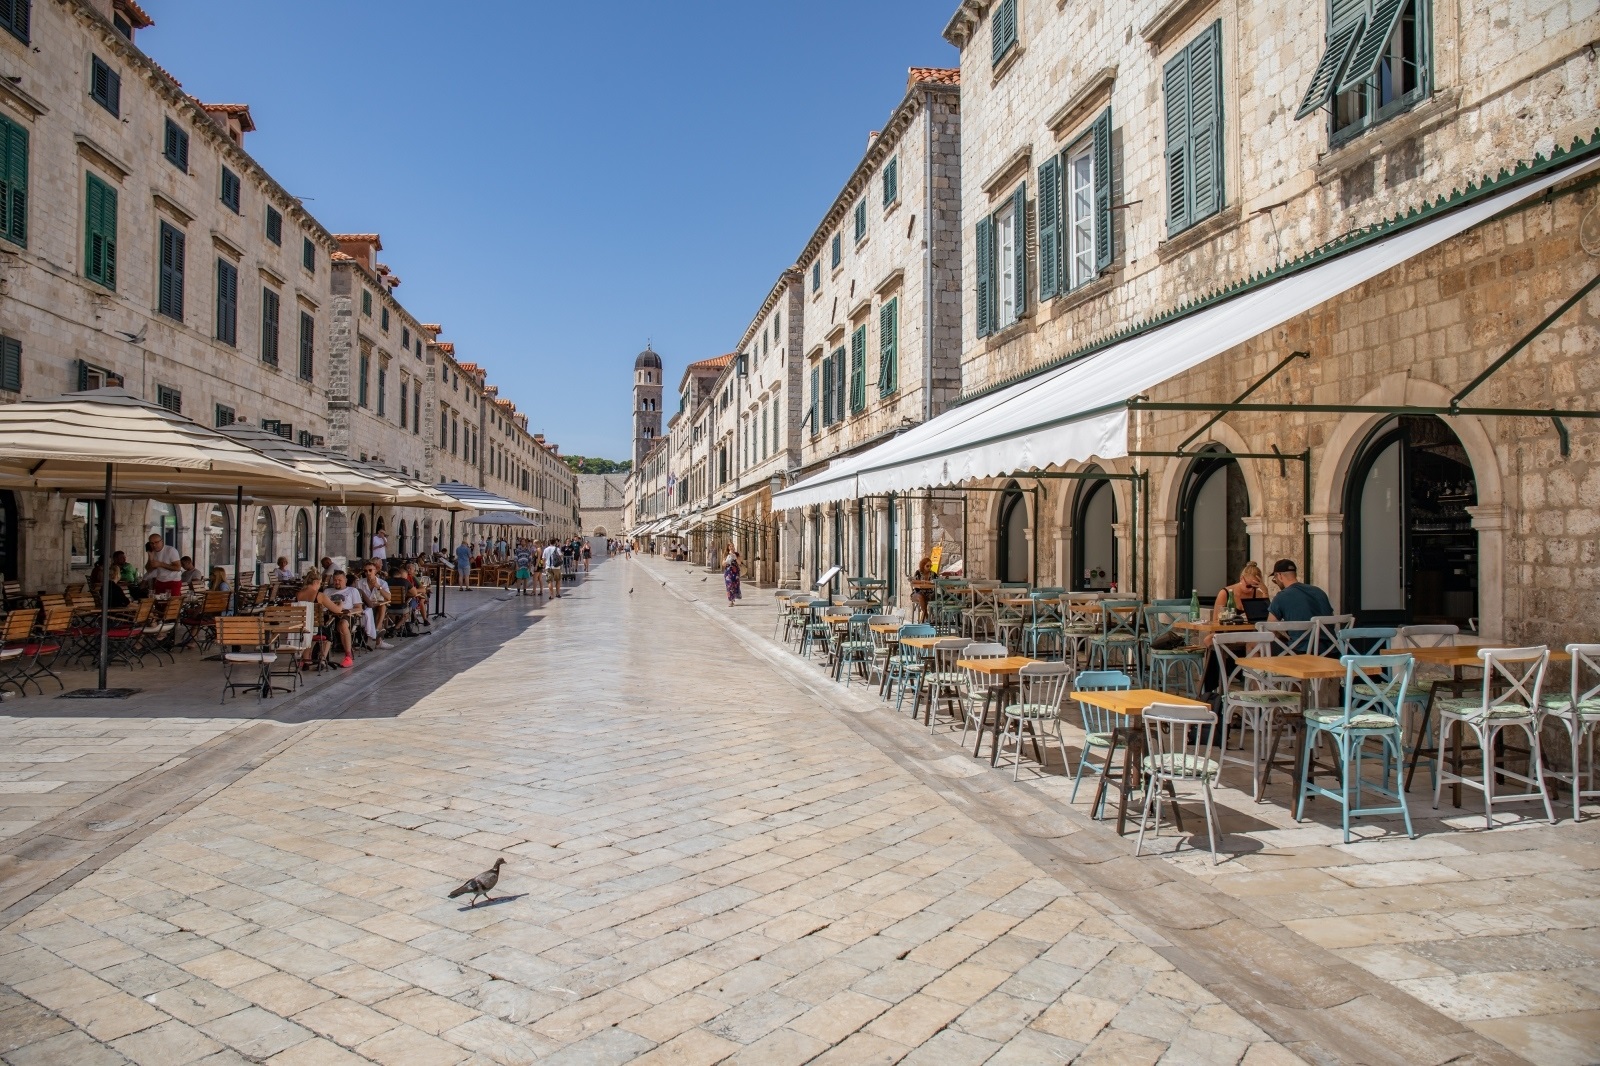 31.08.2020., Stara gradska jezgra, Dubrovnik - Gotovo prazni kafici i malobrojni turisti u staroj gradskoj jezgri.
Photo: Grgo Jelavic/PIXSELL